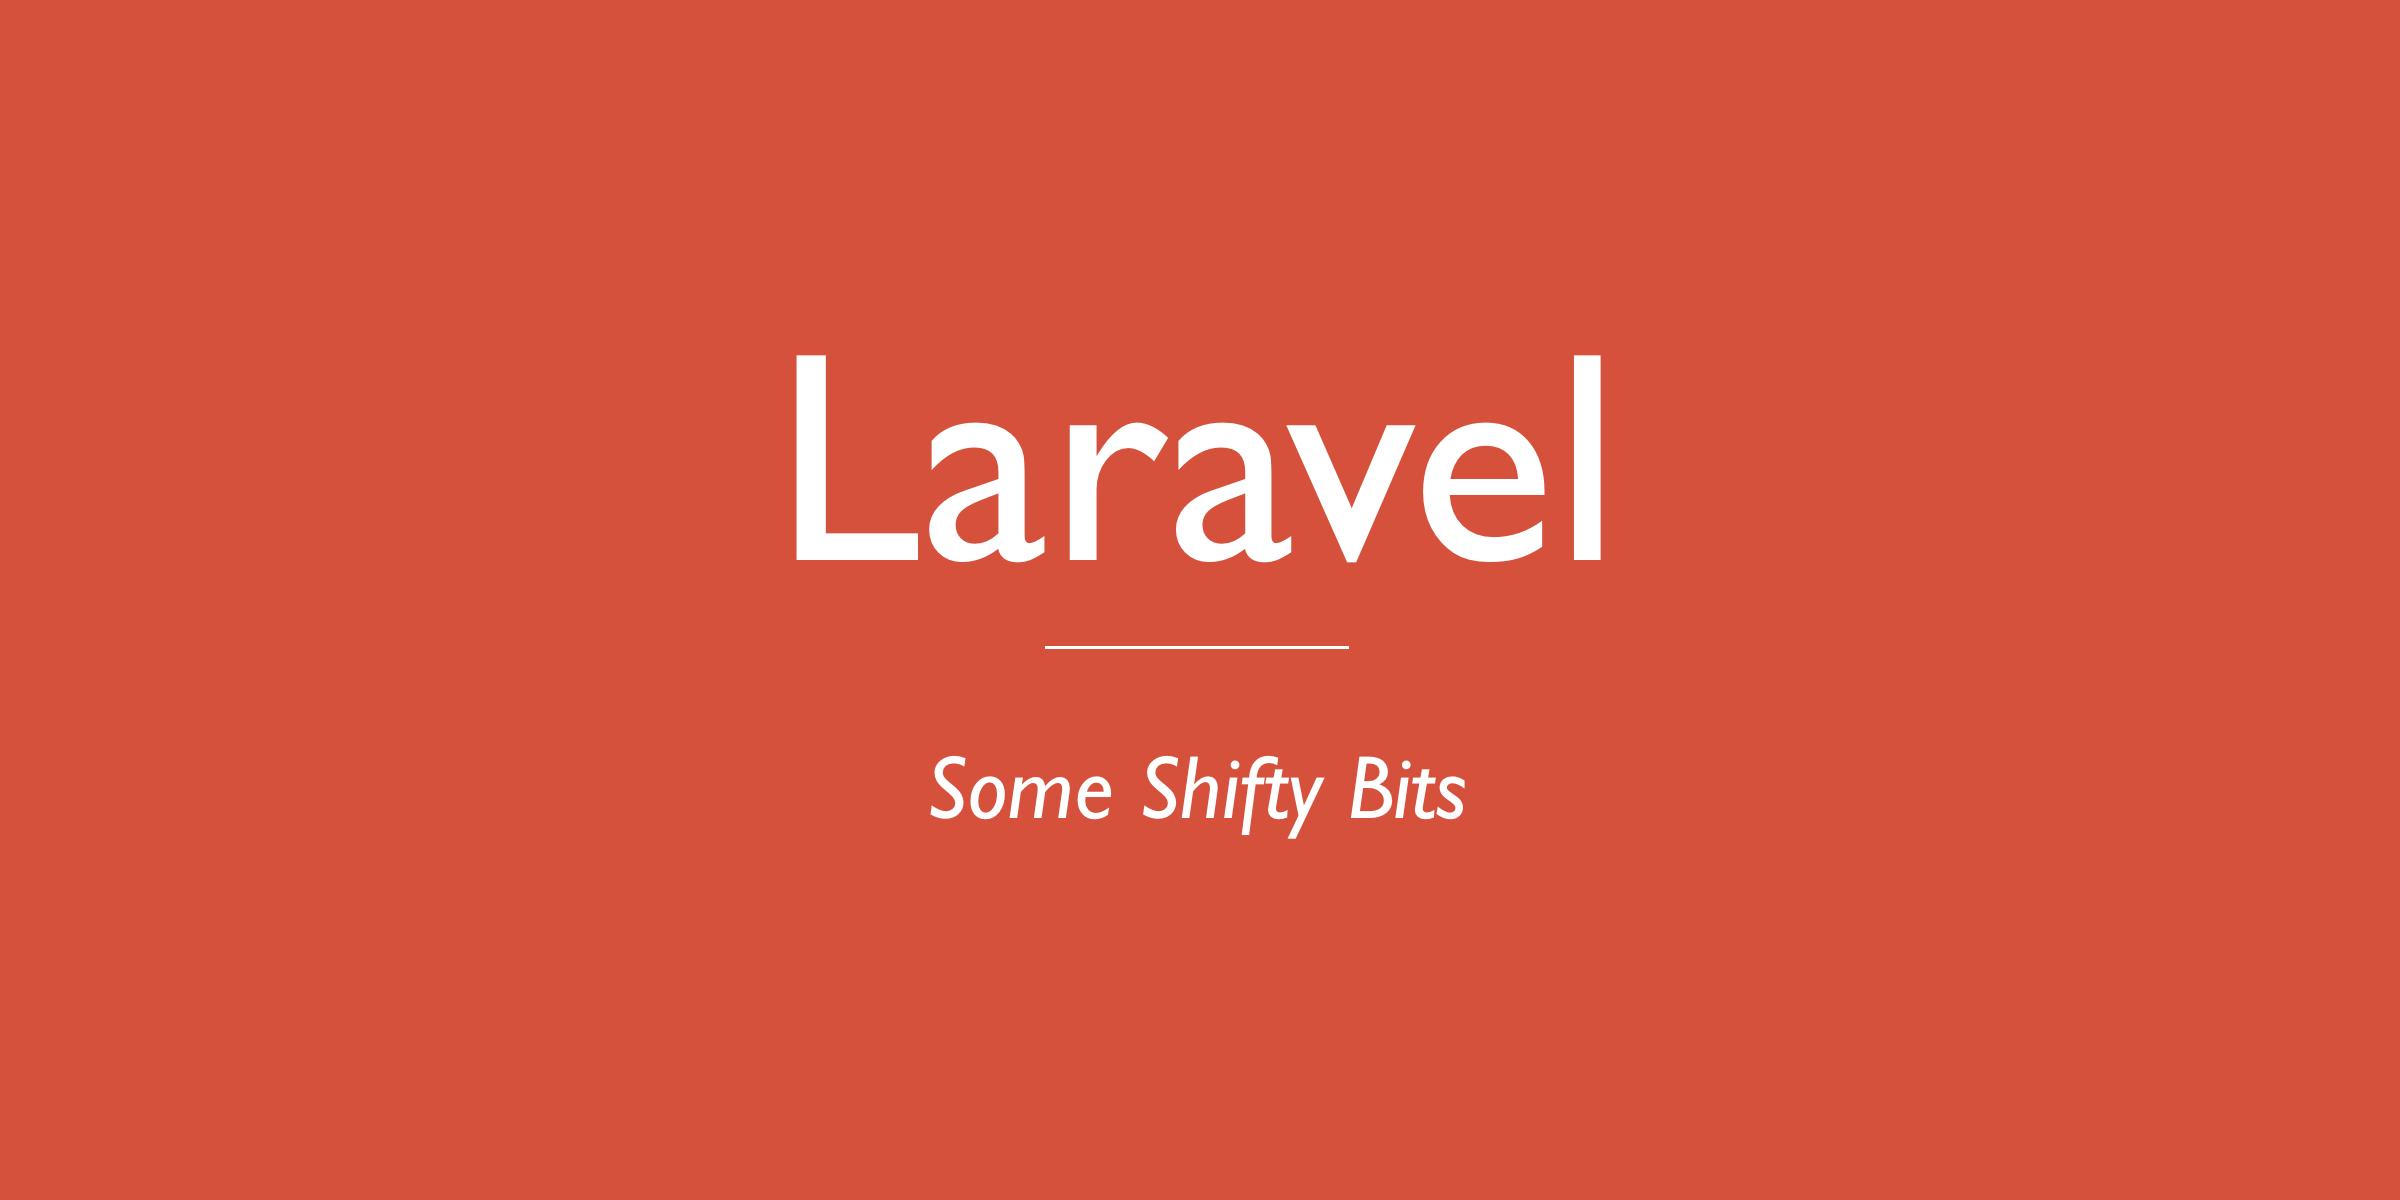 Laravel - Some Shifty Bits